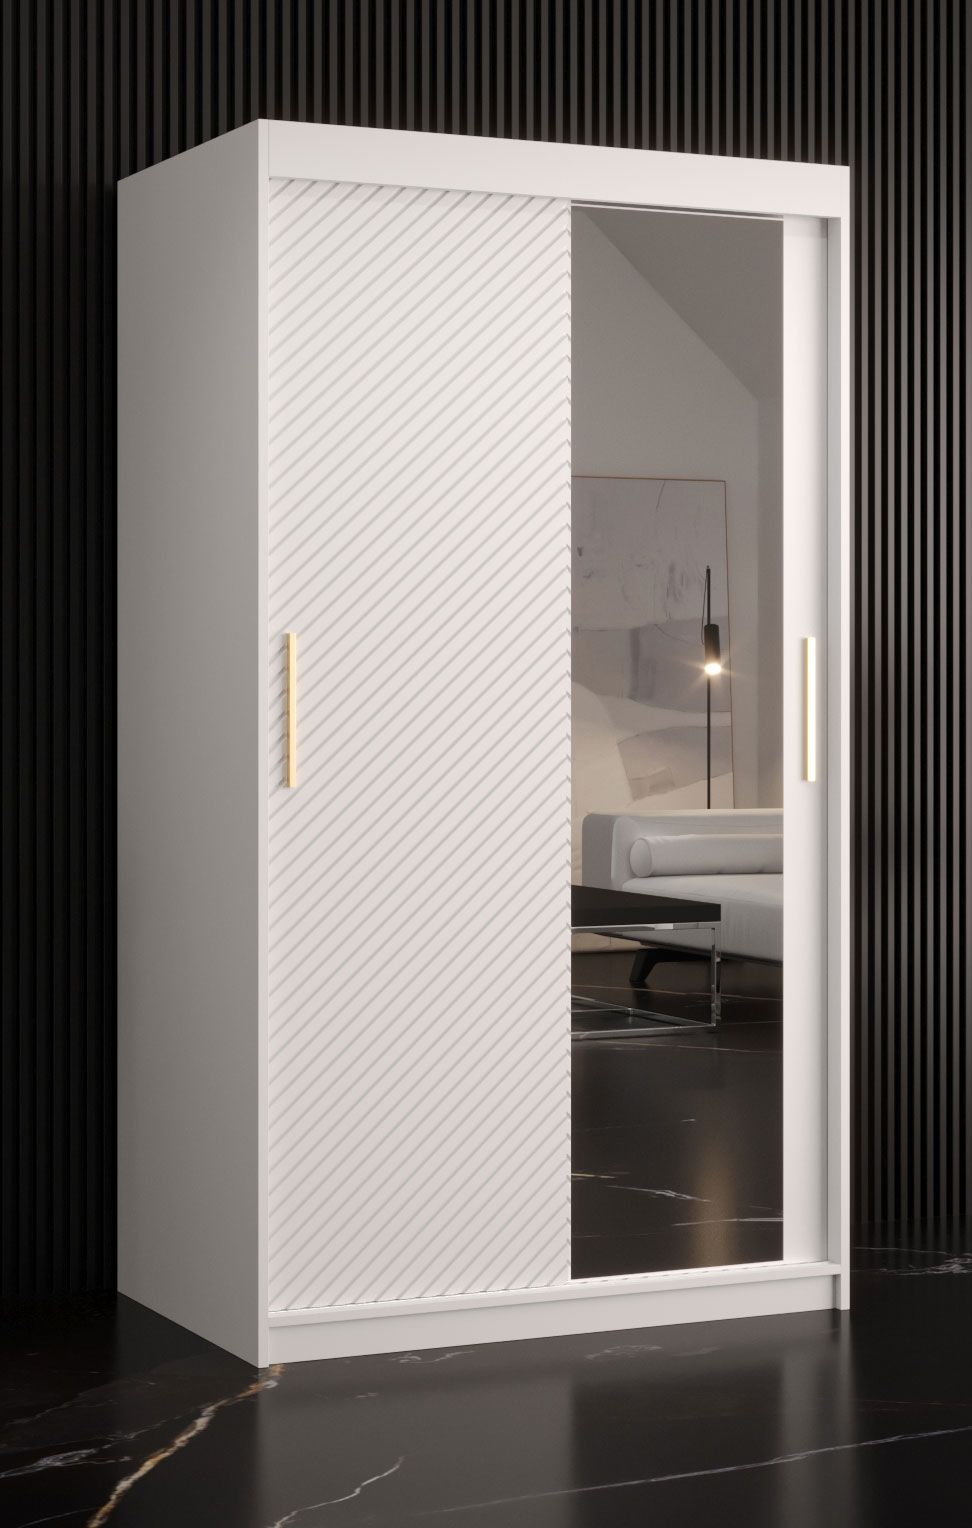 Kledingkast in eenvoudige stijl Balmenhorn 25, kleur: mat wit - afmetingen: 200 x 100 x 62 cm (H x B x D), met één deur met spiegel